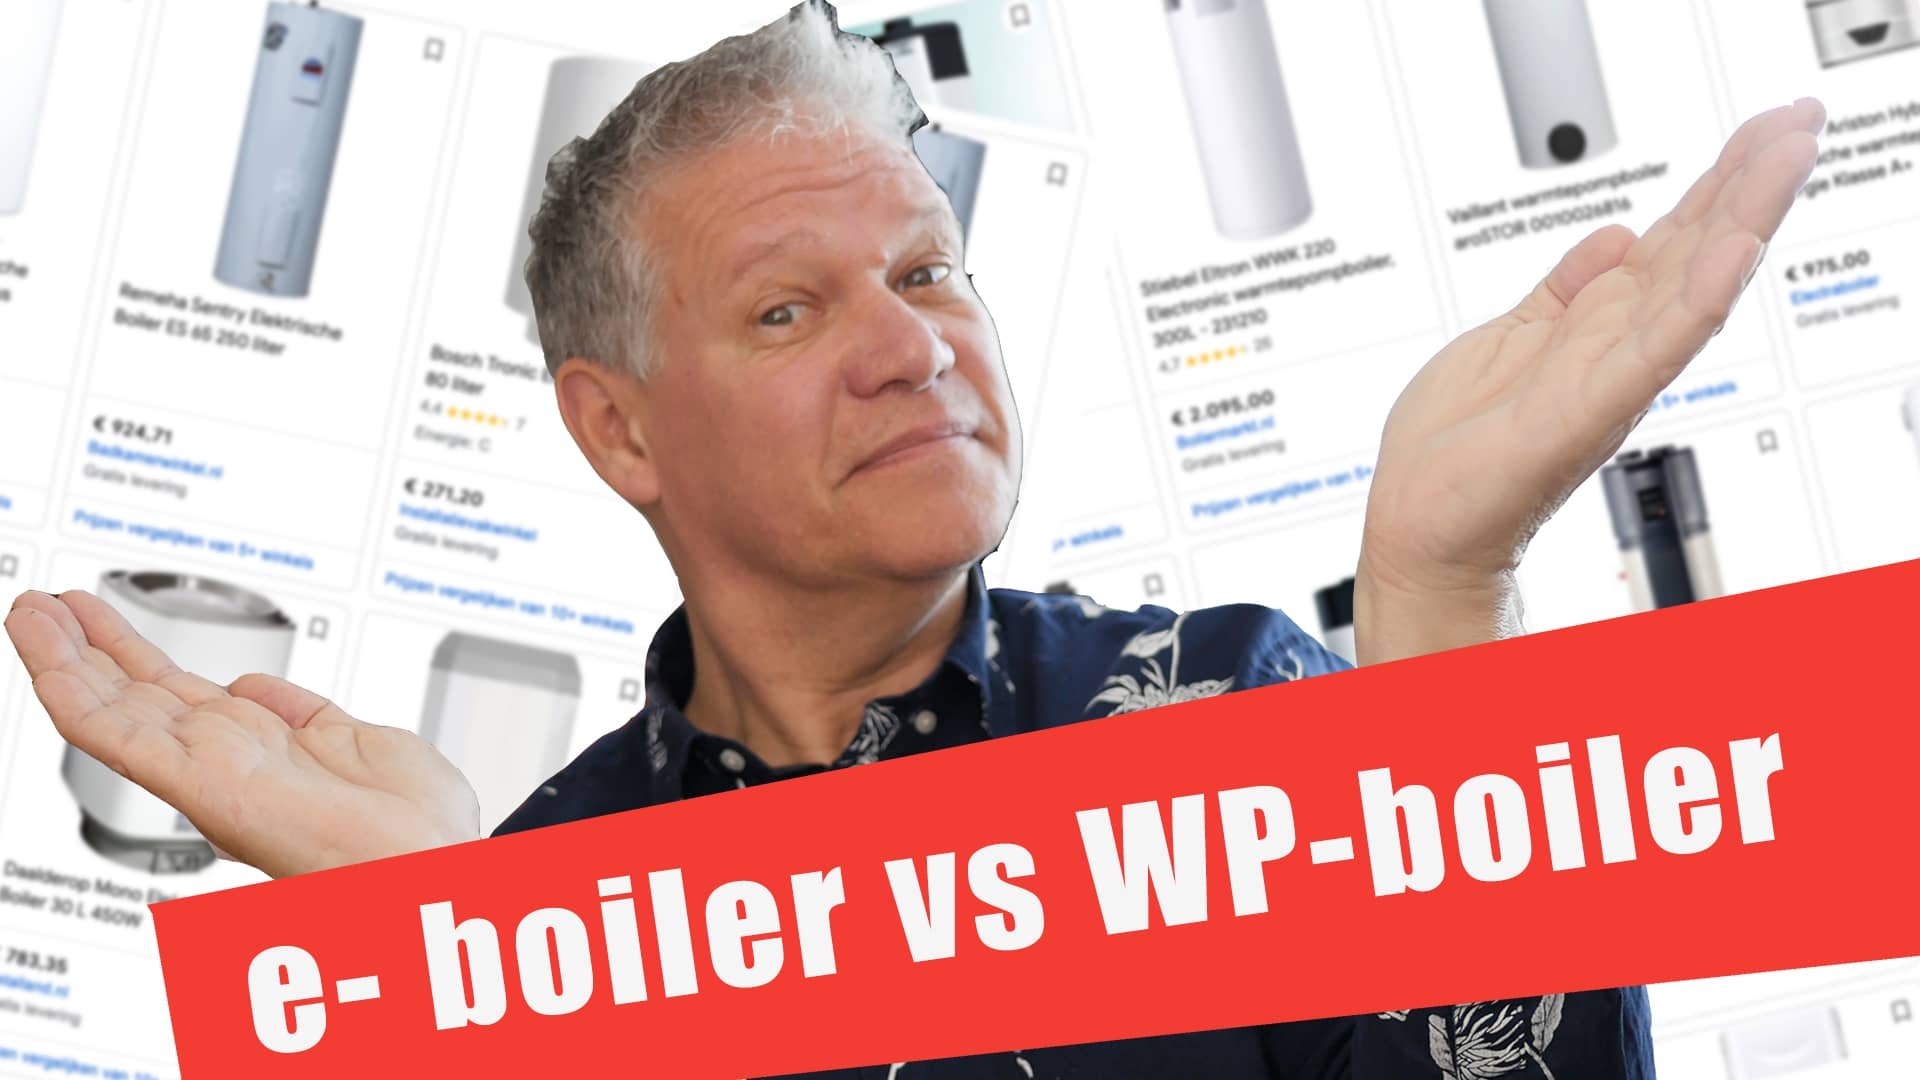 Wat is slim een e-boiler versus een warmtepomp boiler. wat moet je kiezen?